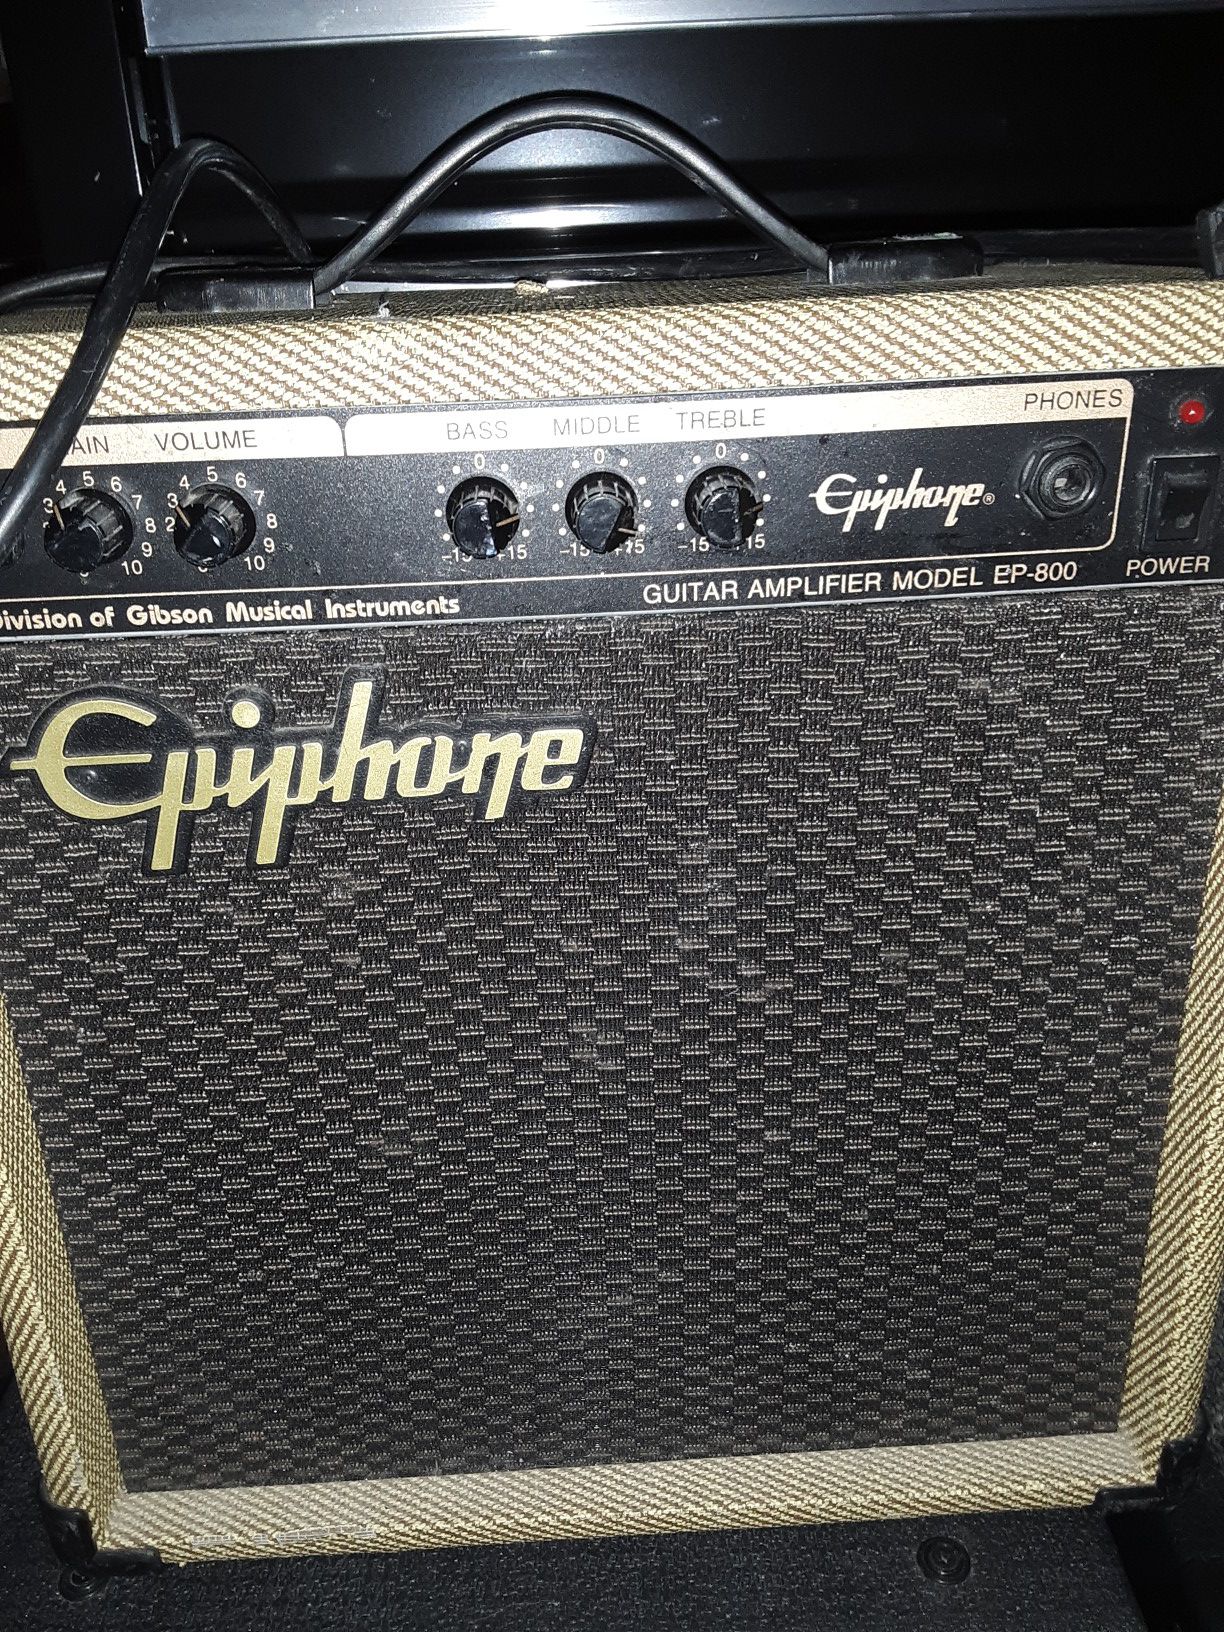 Epiphone guitar amp